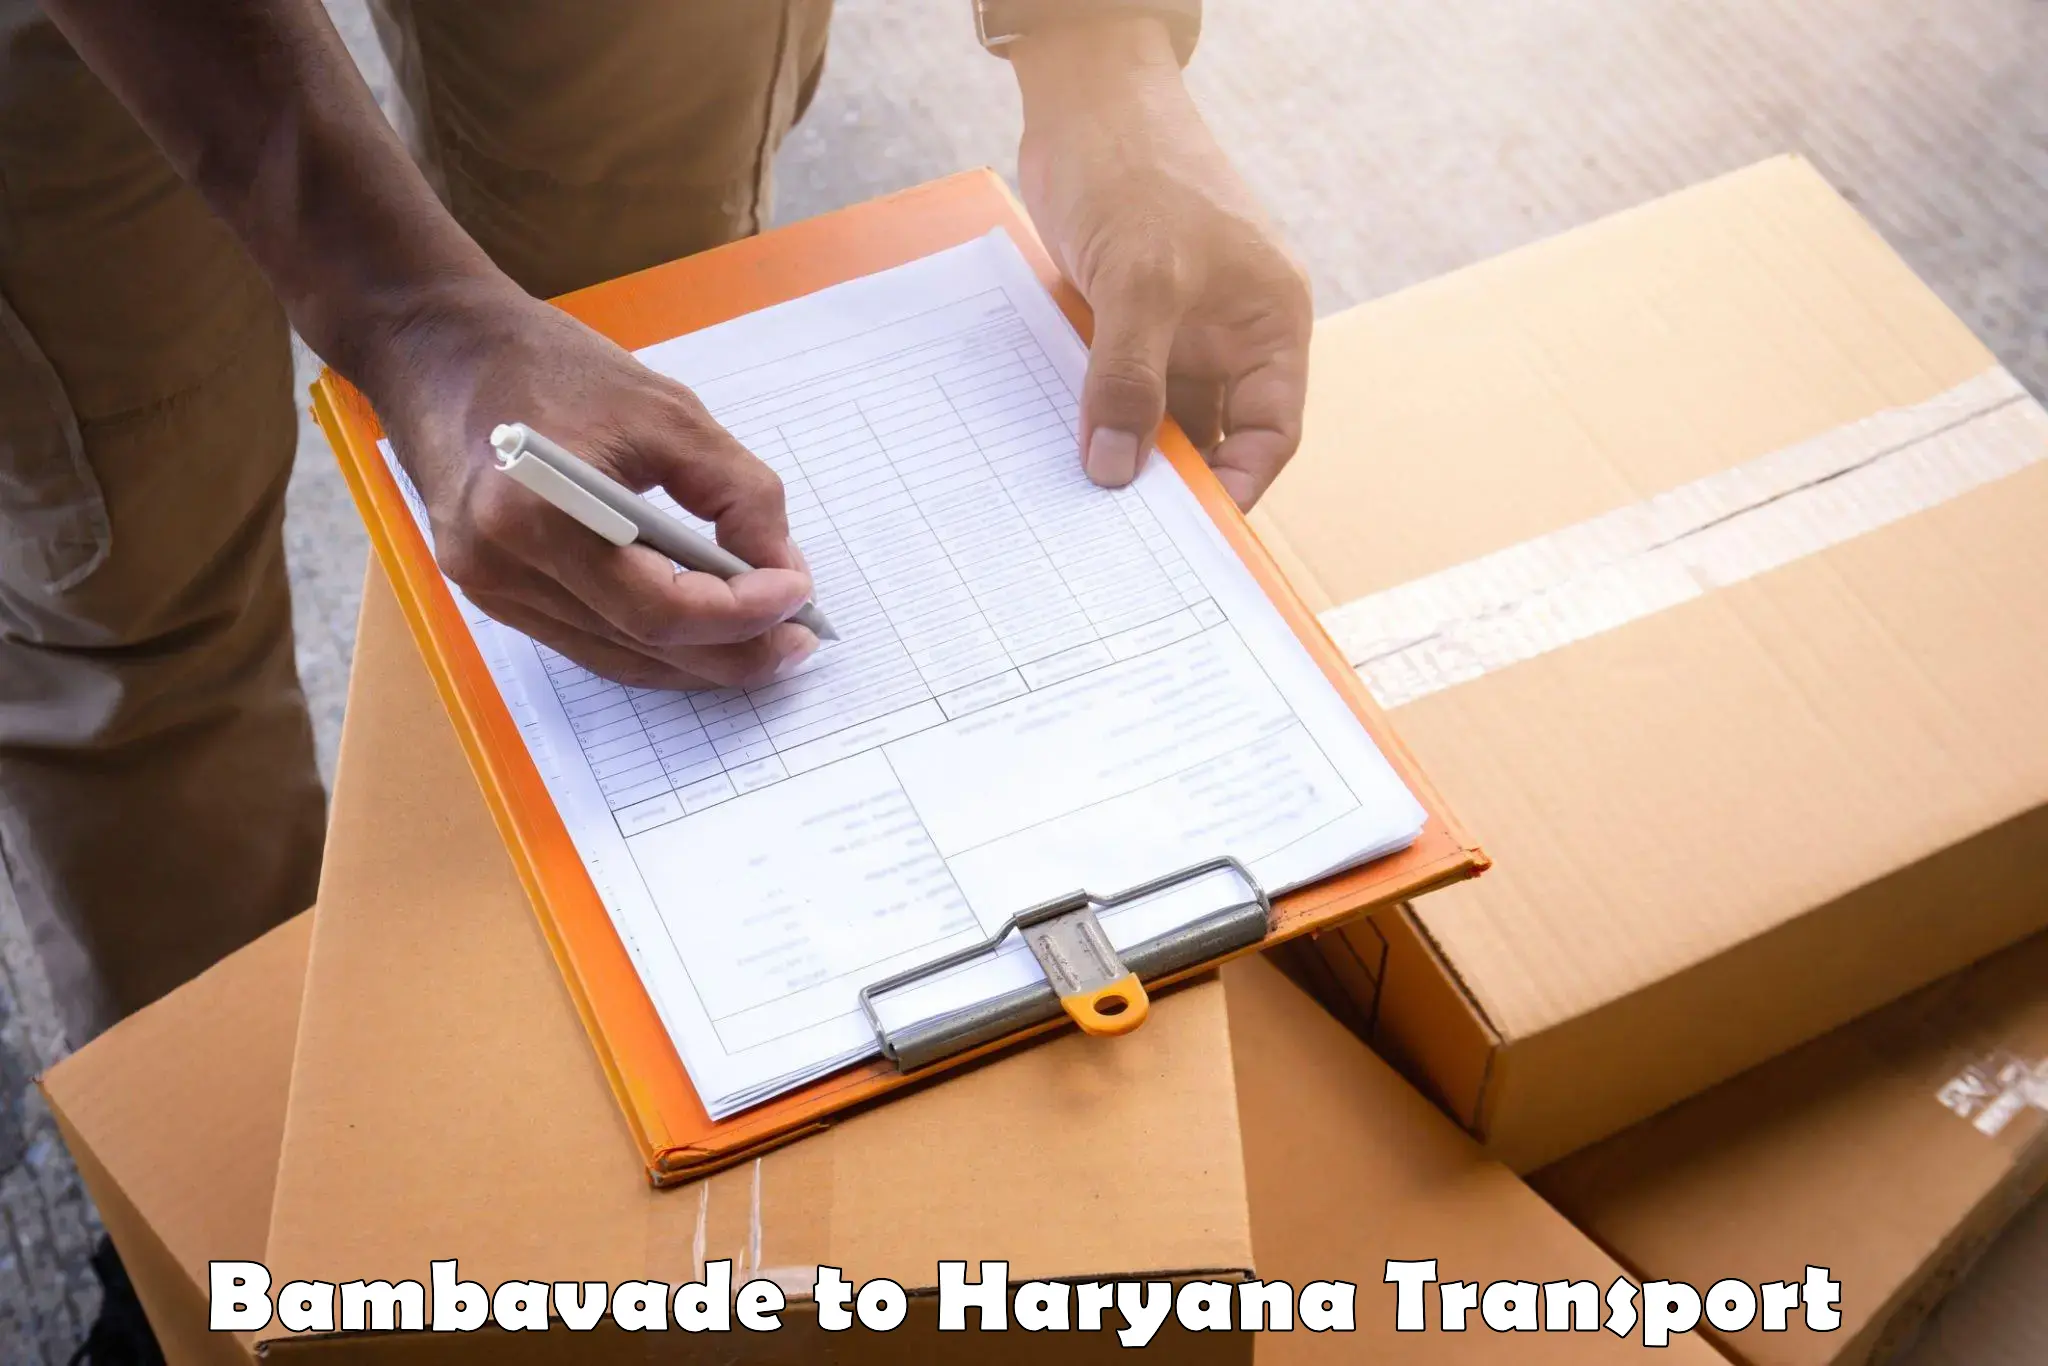 Furniture transport service Bambavade to NCR Haryana